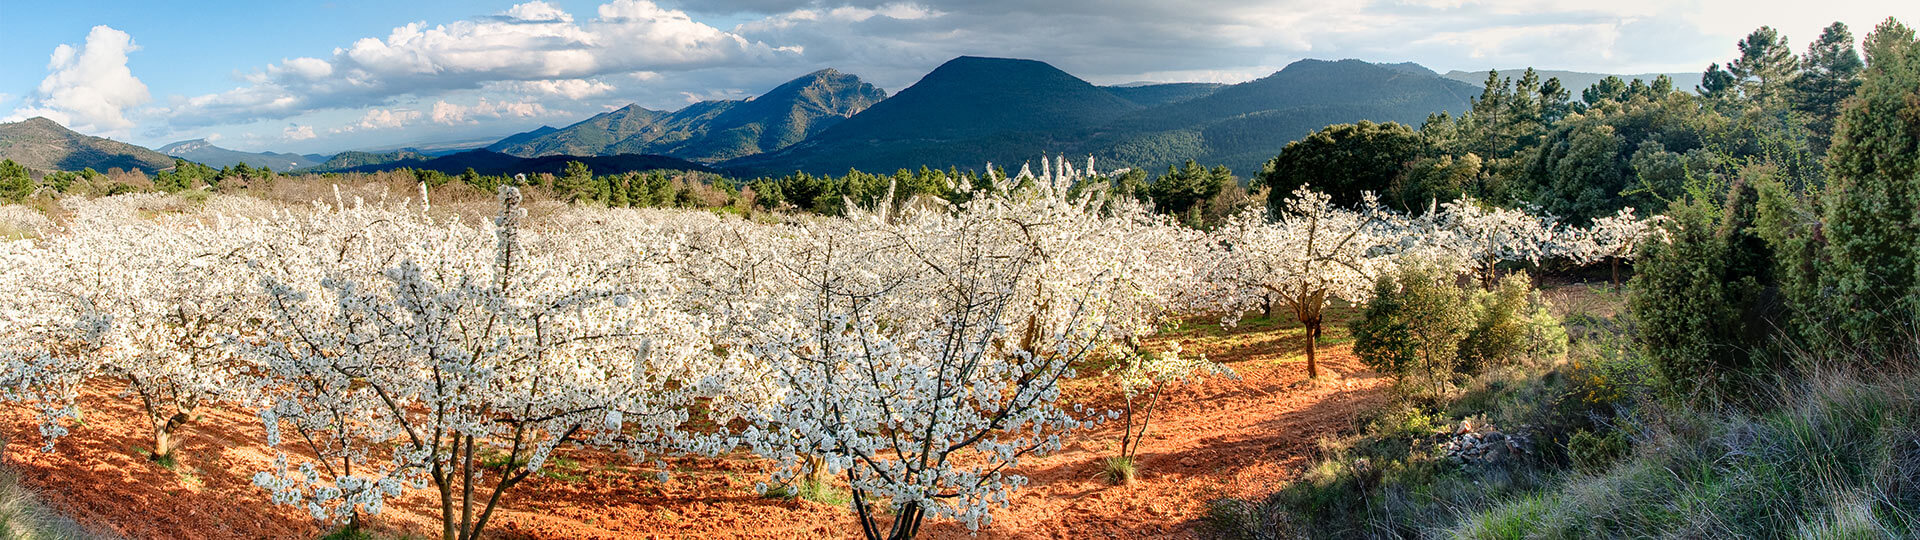  Kwitnące czereśnie w dolinie Valle del Jerte, Estremadura